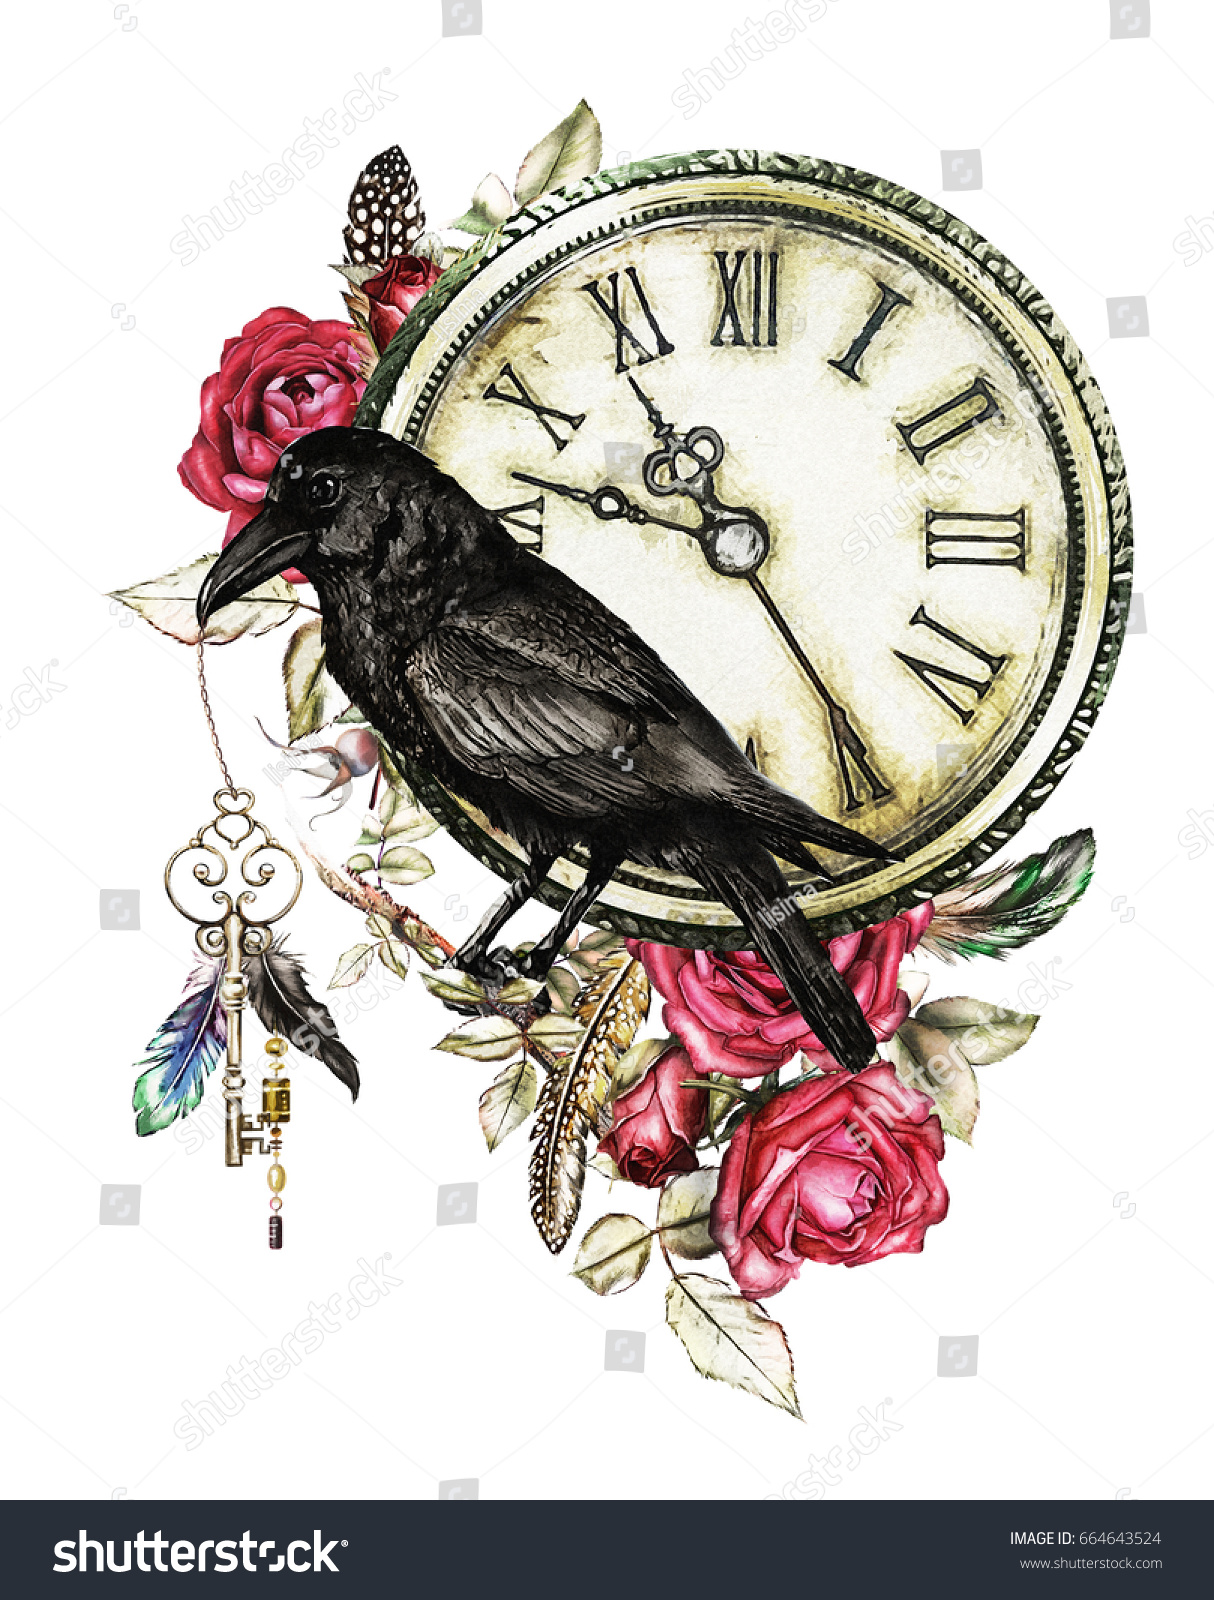 カラス 赤いバラ 時計 鍵 羽の付いた水彩イラスト ゴシックの背景に花 Tシャツ タトゥーの格好いい印刷 ビンテージ のイラスト素材 664643524